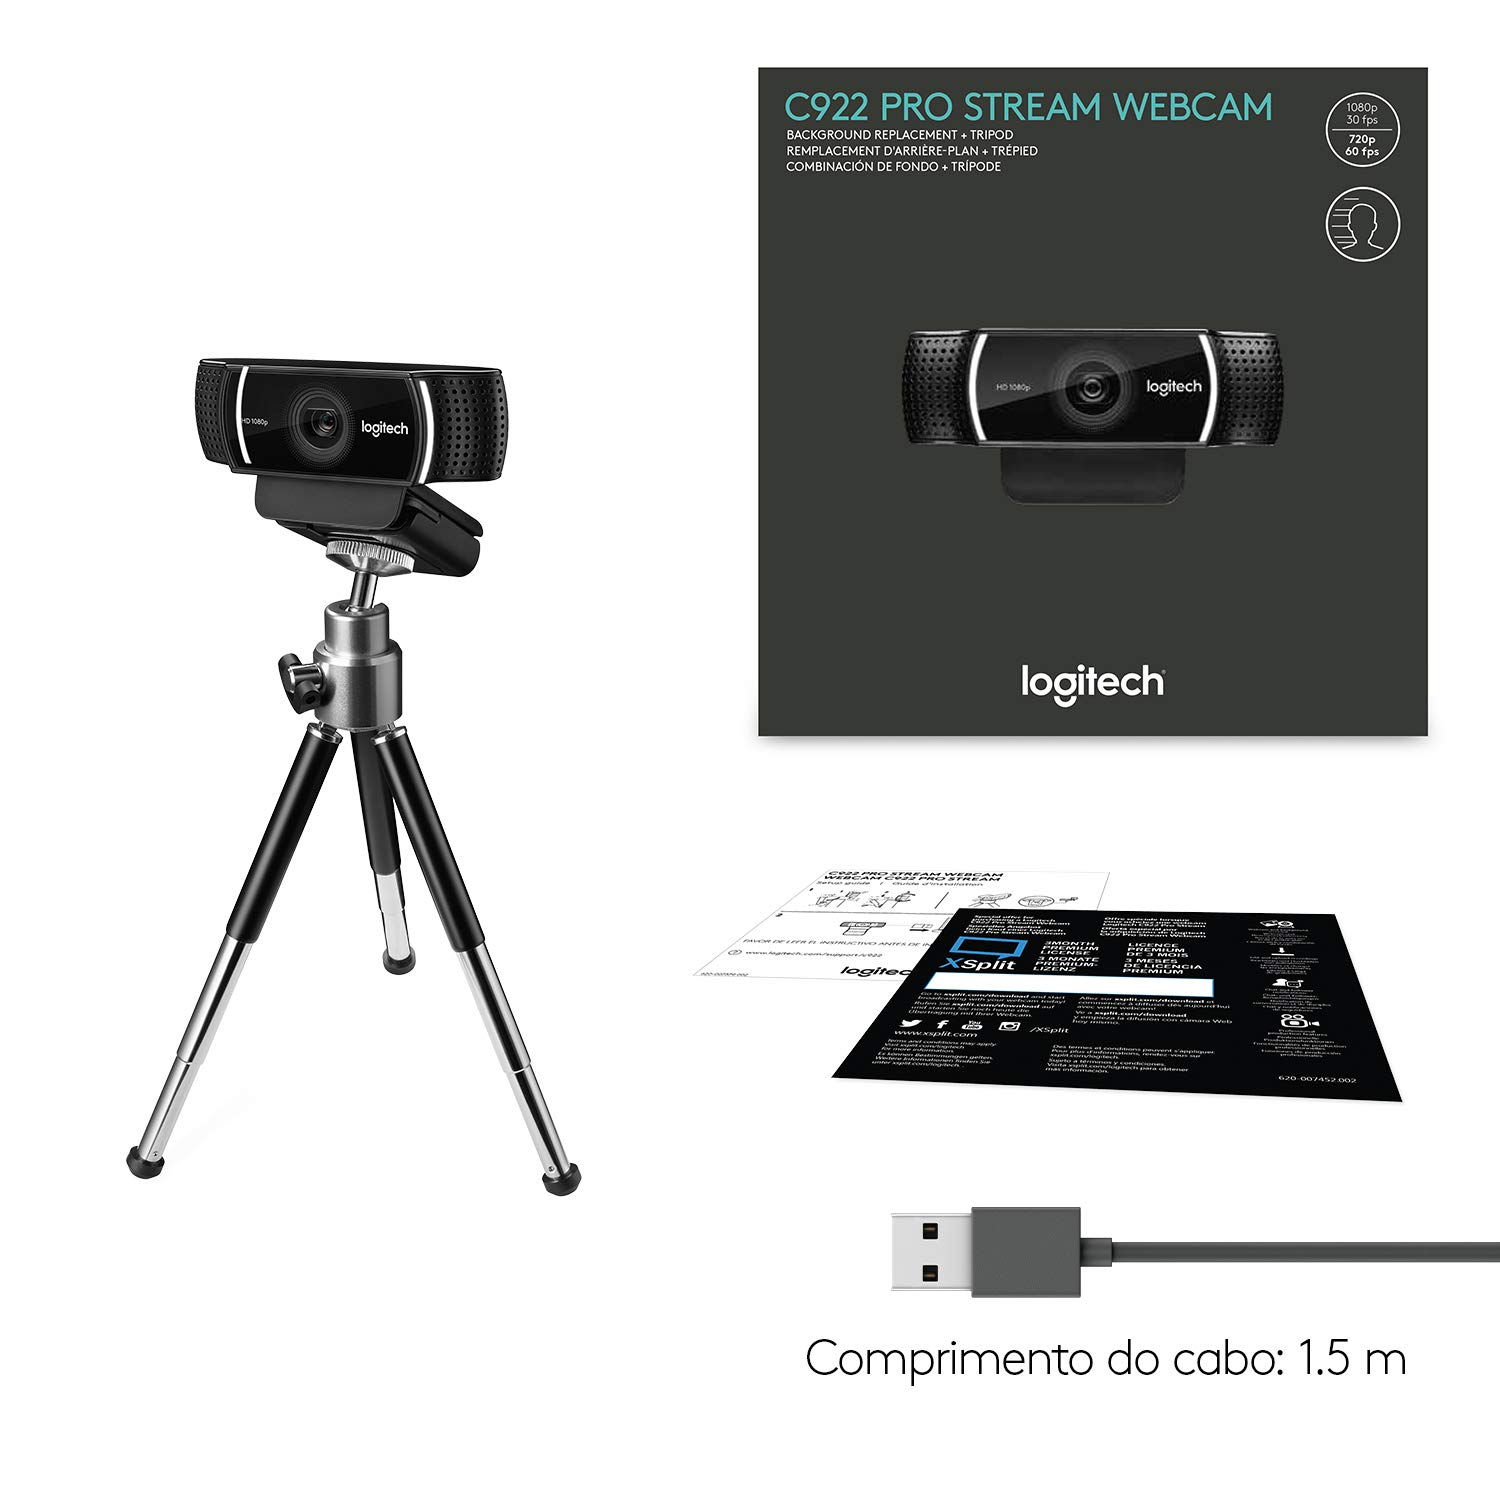 Webcam Logitech C922 Pro: Bạn đang tìm kiếm một chiếc webcam chất lượng cao để thu lại những khoảnh khắc của bạn khi làm việc hay thư giãn tại nhà? Webcam Logitech C922 Pro là lựa chọn hoàn hảo cho bạn với độ phân giải Full HD 1080p và tính năng StreamCam giúp bạn phát trực tiếp trên nhiều nền tảng khác nhau.